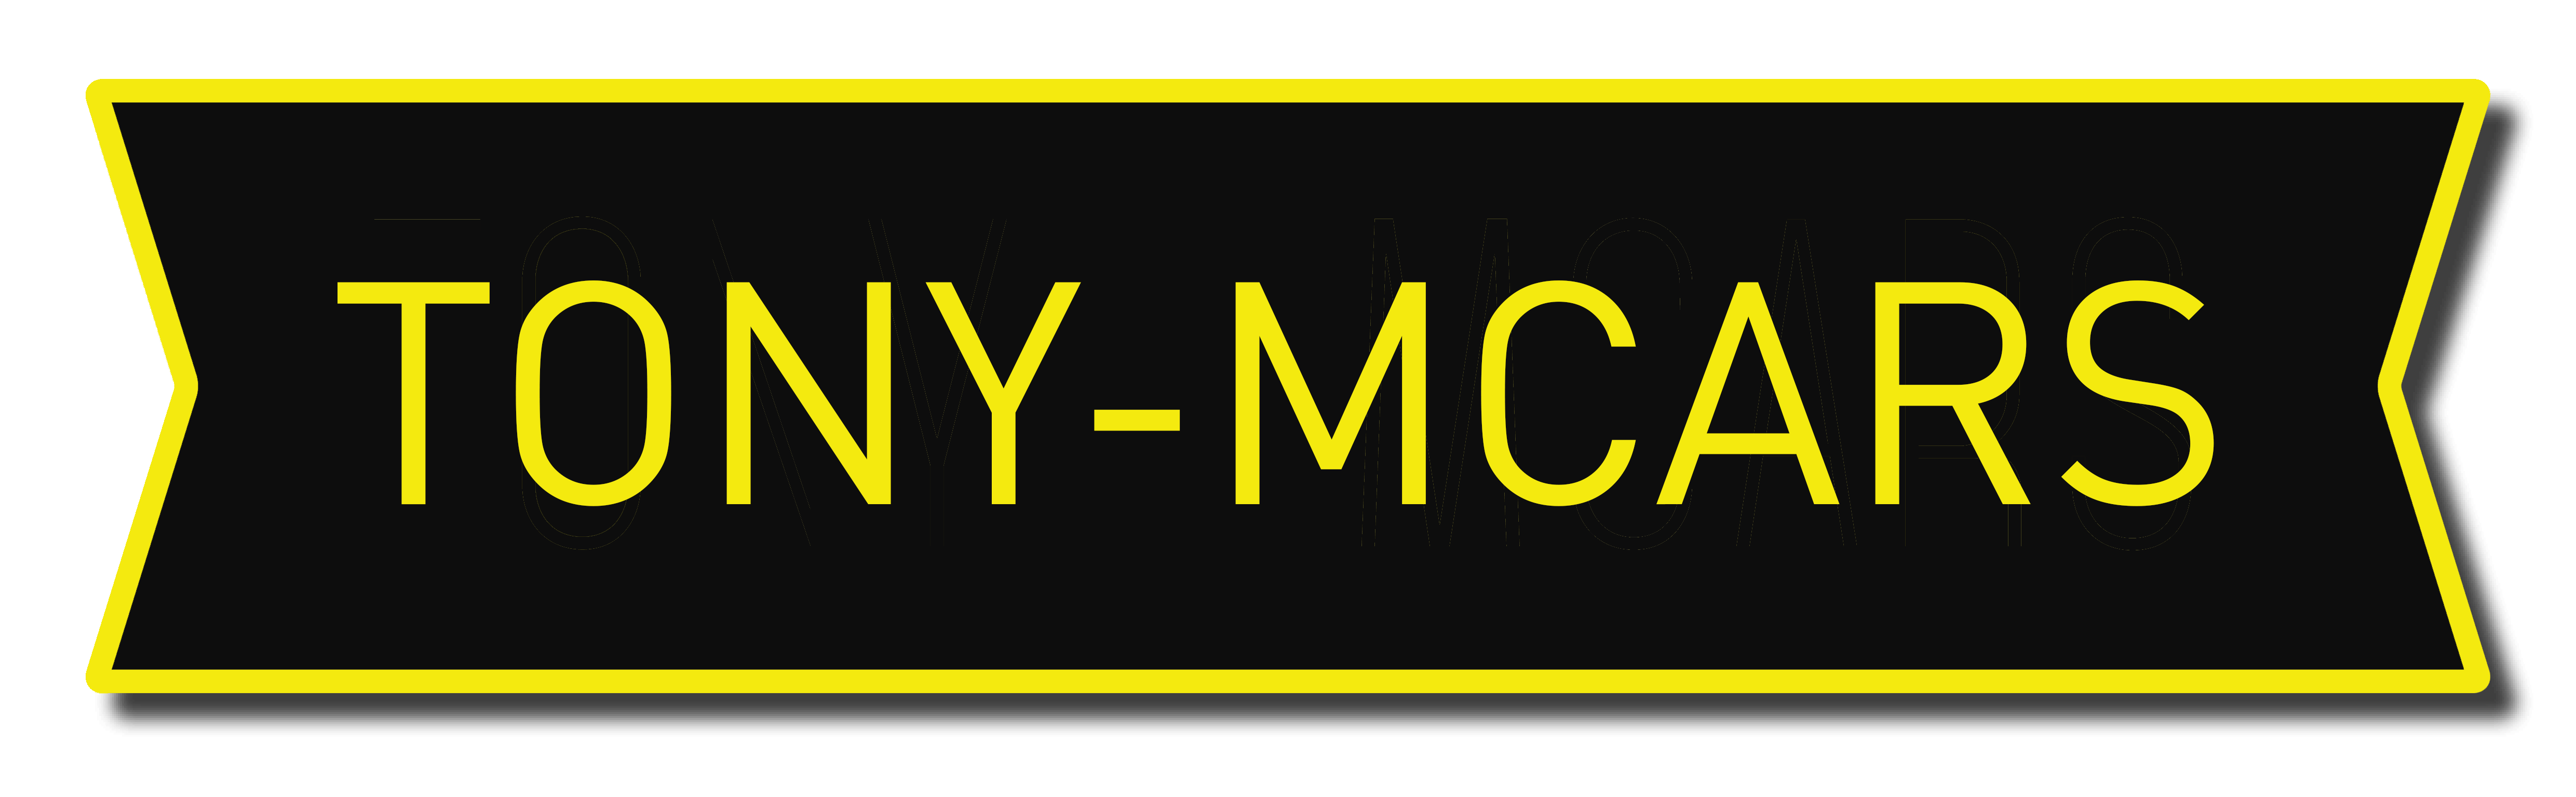 Tony-MCars-logo auto opkoper auto verkopen